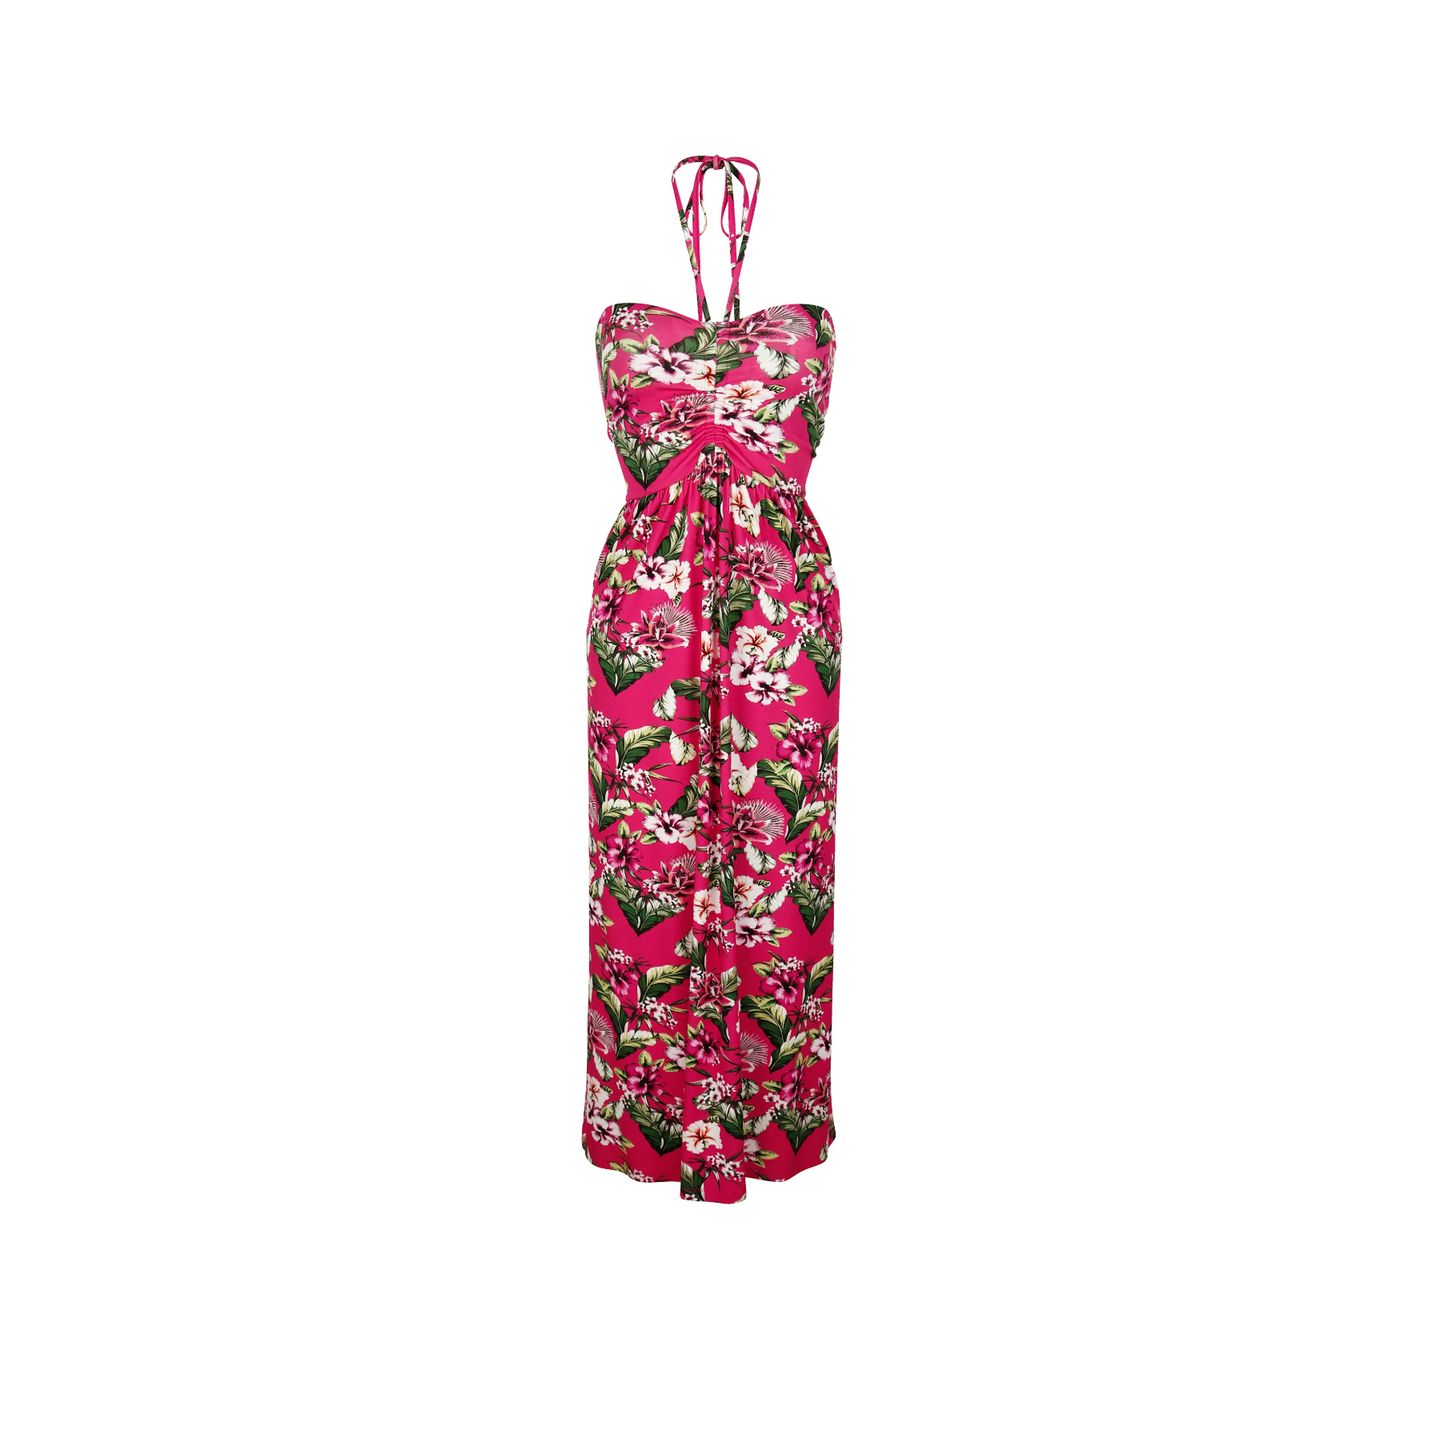 Wenn ein Kleid Urlaubssehnsucht hervorrufen kann, dann ist es dieses Neckholder-Kleid von Alba Moda. Tropische Blumen-Prints, ein kräftiges Pink und ein figurbetonter Schnitt lassen uns auch im Frühling wie eine Sommergöttin aussehen. Kleid von Alba Moda, ca. 90 Euro.   Mit der BRIGITTE Shopping Card sparst du bei Alba Moda vom 16. März bis 04. April 2022 20 Euro. 